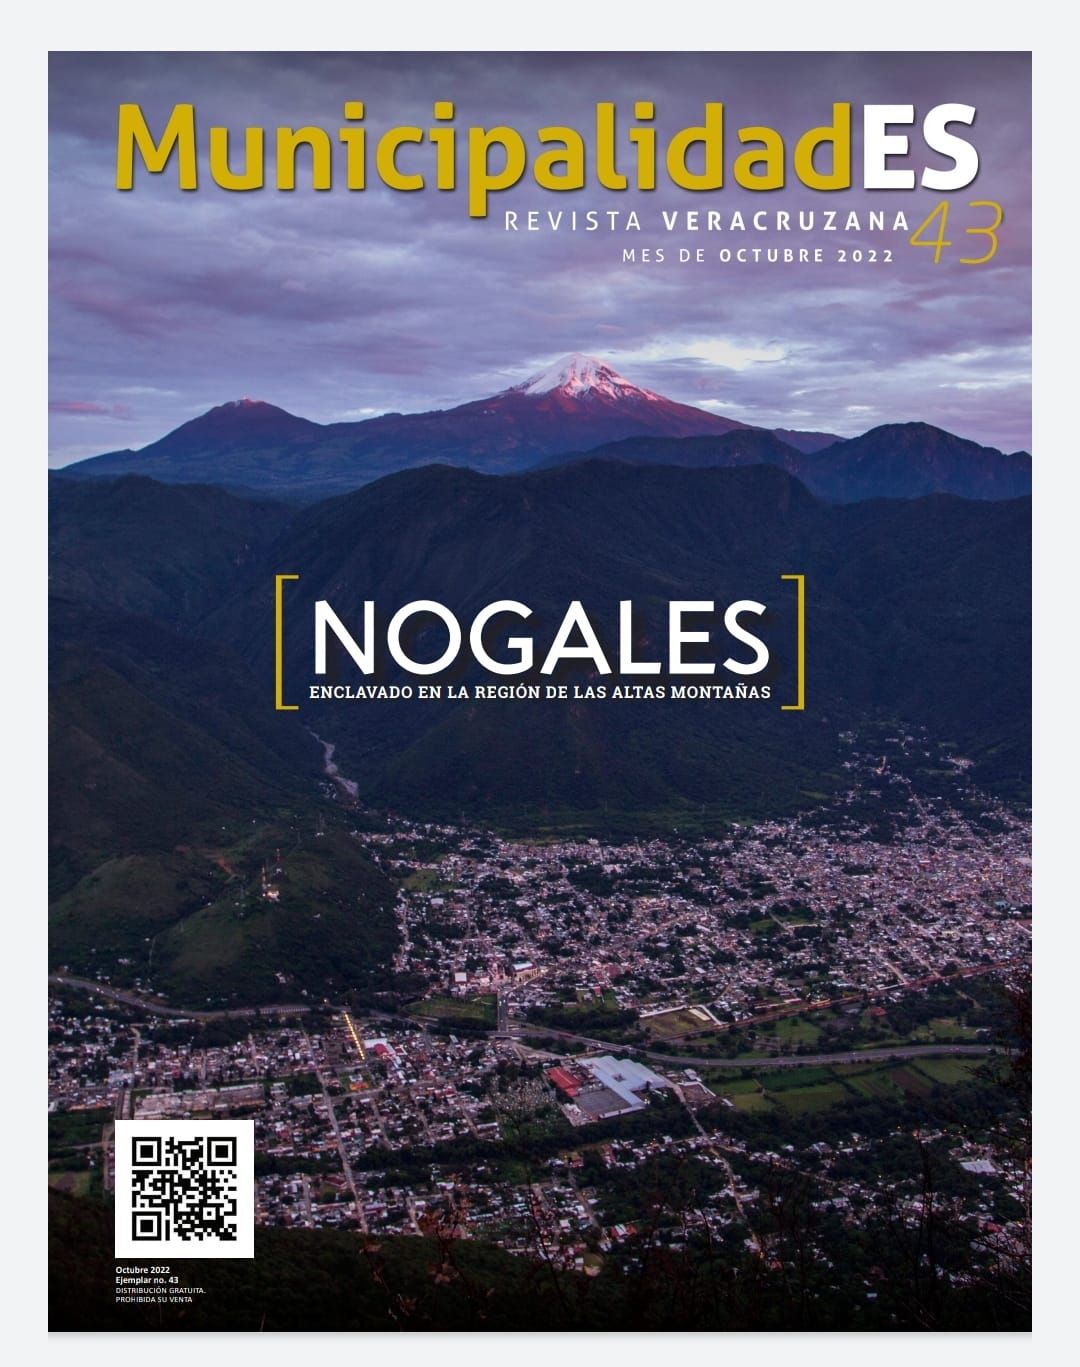 Nogales presente en la Revista Veracruzana MunicipalidadES del mes de octubre